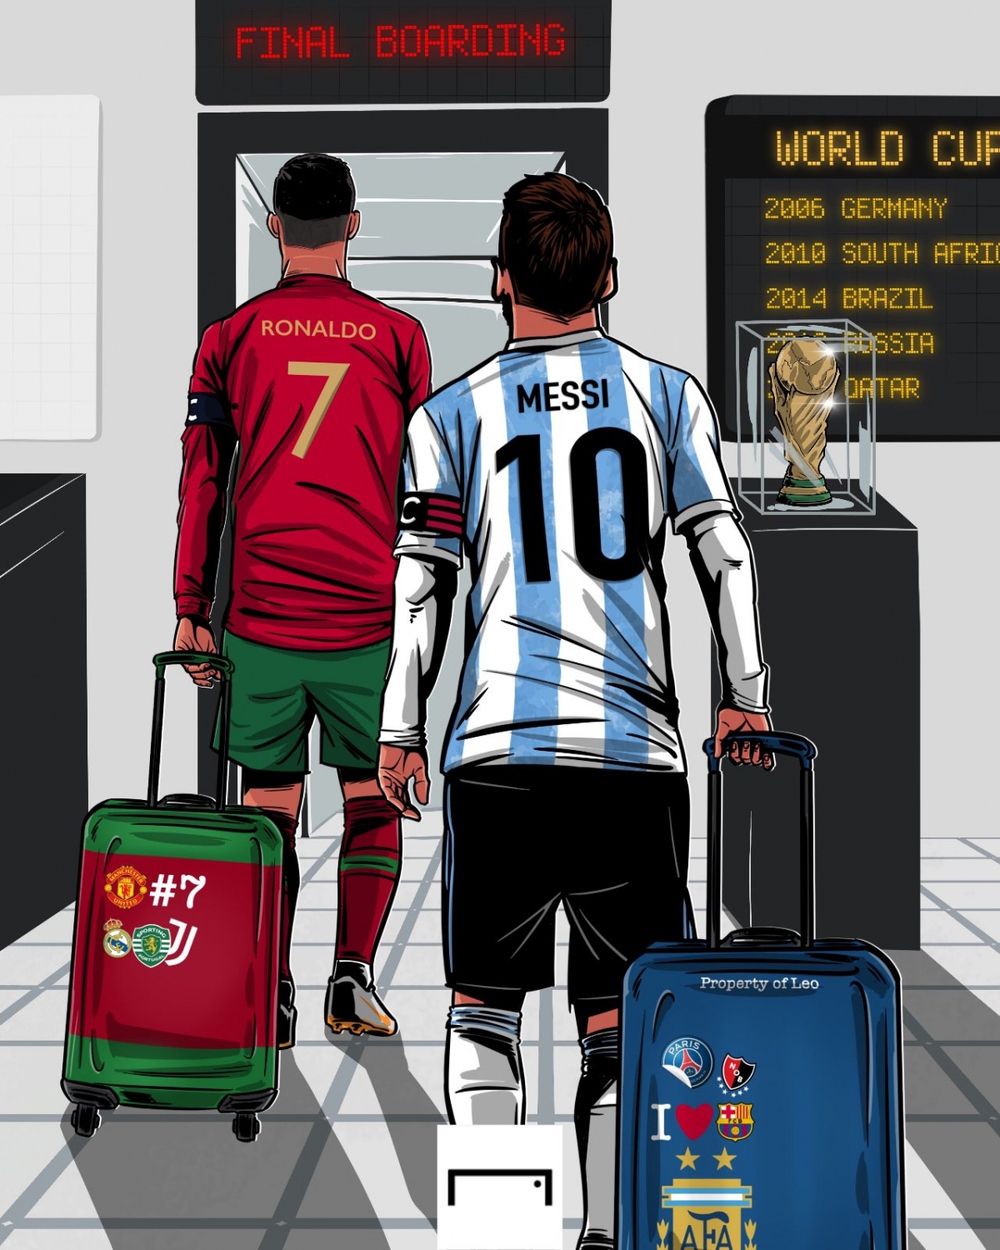 Biếm họa 24h: Ronaldo và Messi lên đường săn vàng World Cup 2022 - Ảnh 1.